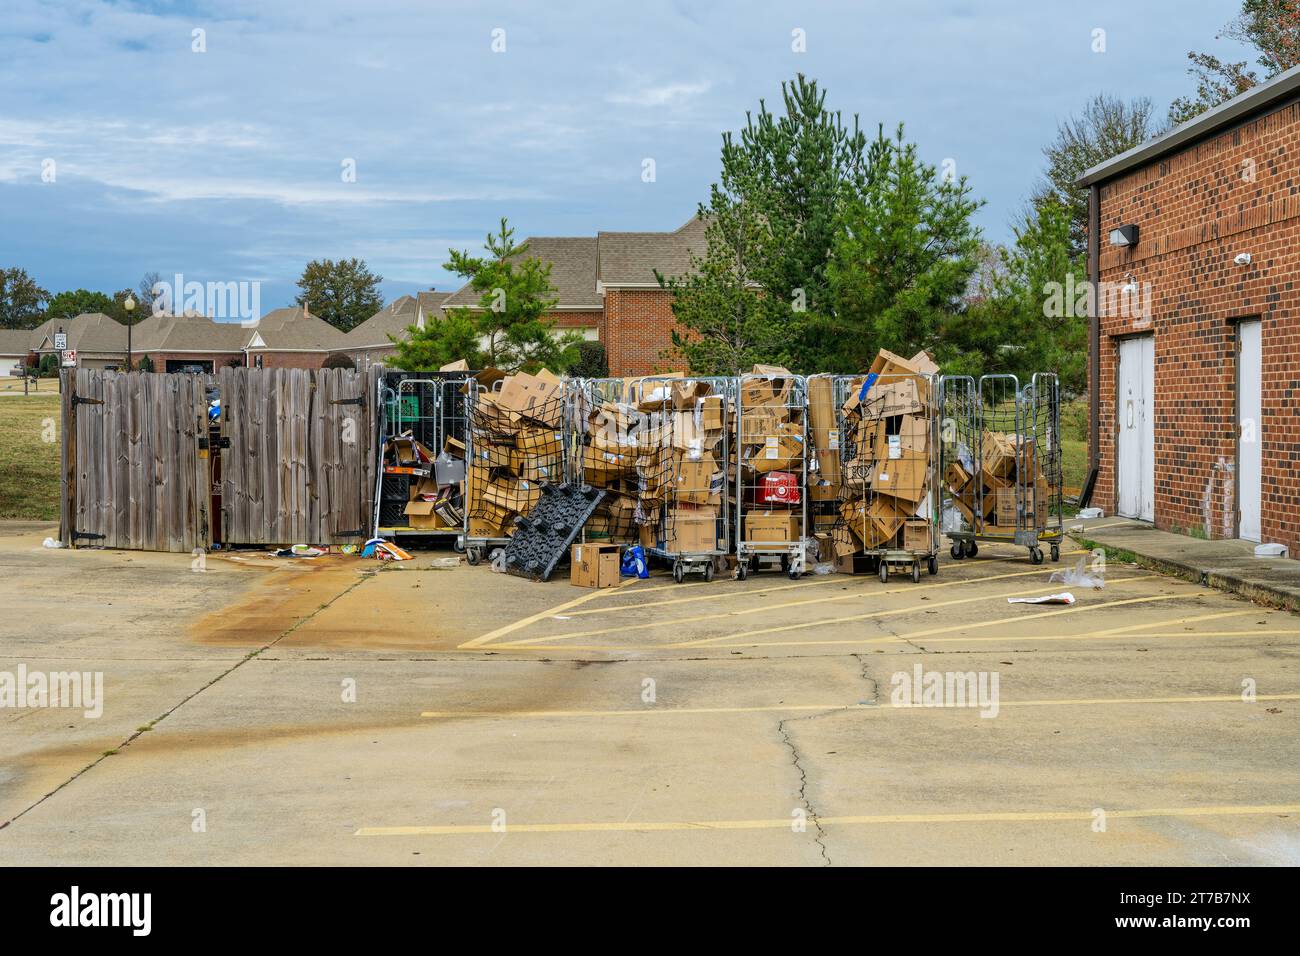 In einem großen Müllcontainer stapelten sich Müll und leere Kartons, in denen die Kartons für das Recycling vorgesehen sind. Stockfoto